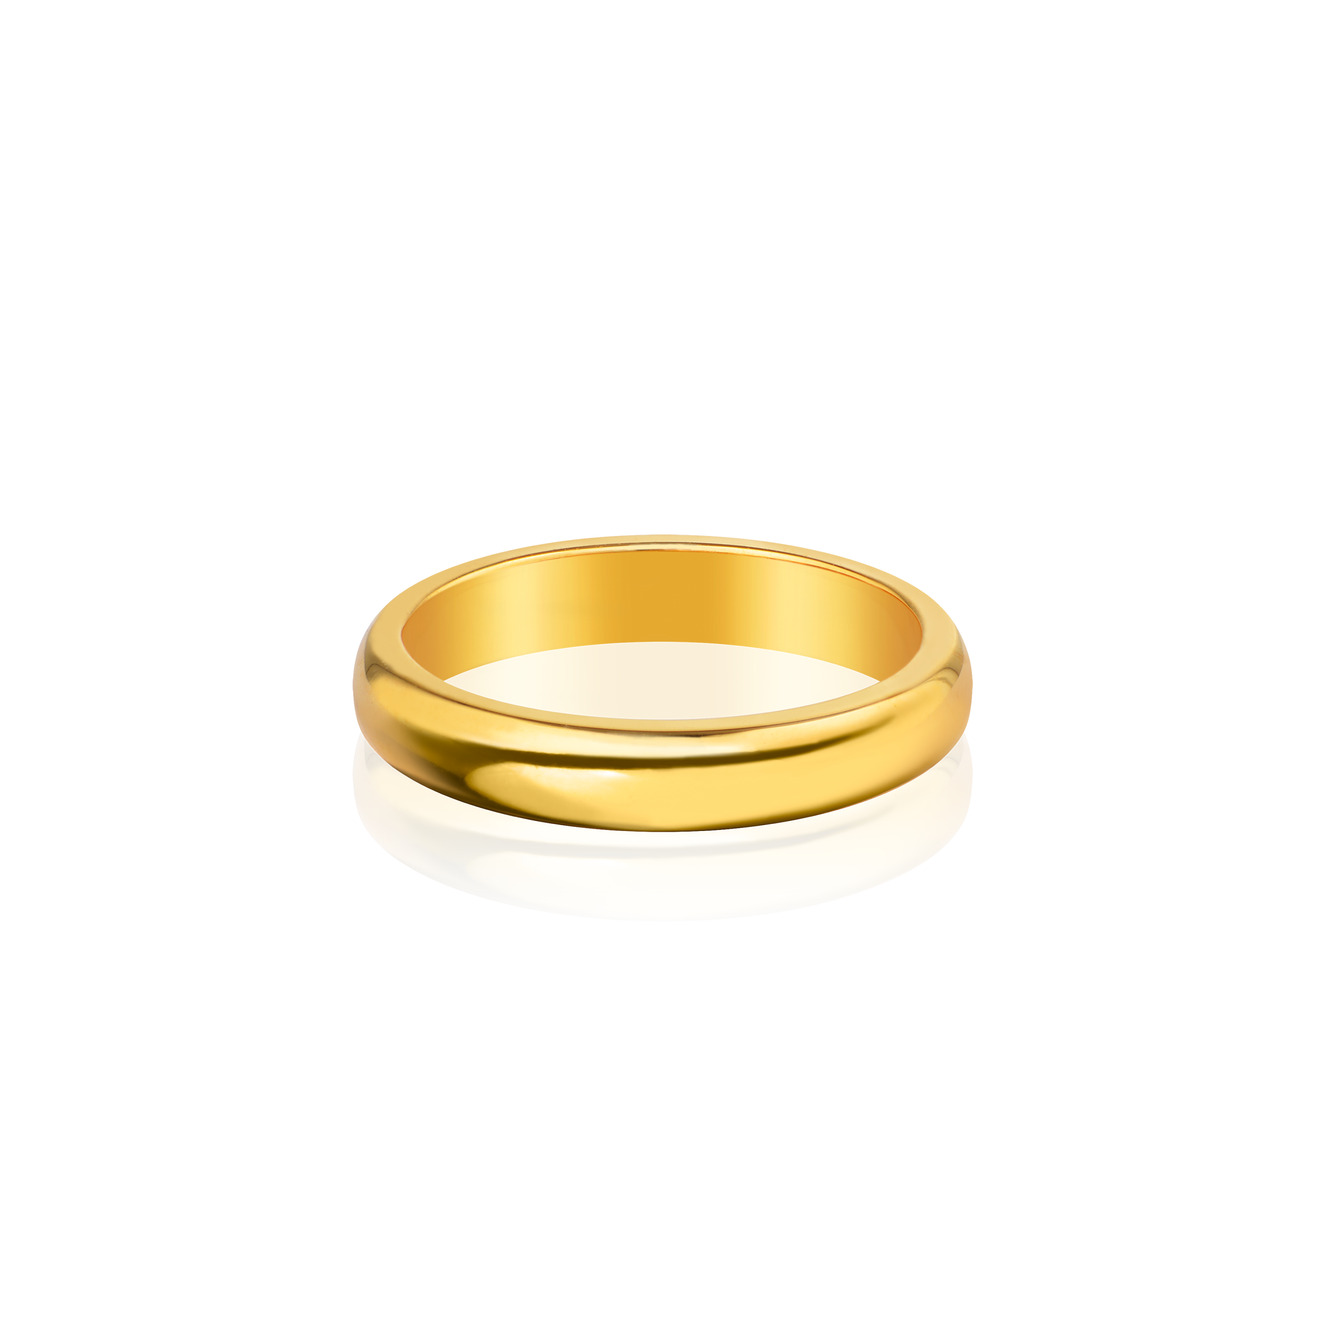 Vertigo Jewellery Lab Позолоченное фаланговое кольцо из серебра ESSENTIALS vertigo jewellery lab фаланговое кольцо из серебра essentials покрытое розовым золотом